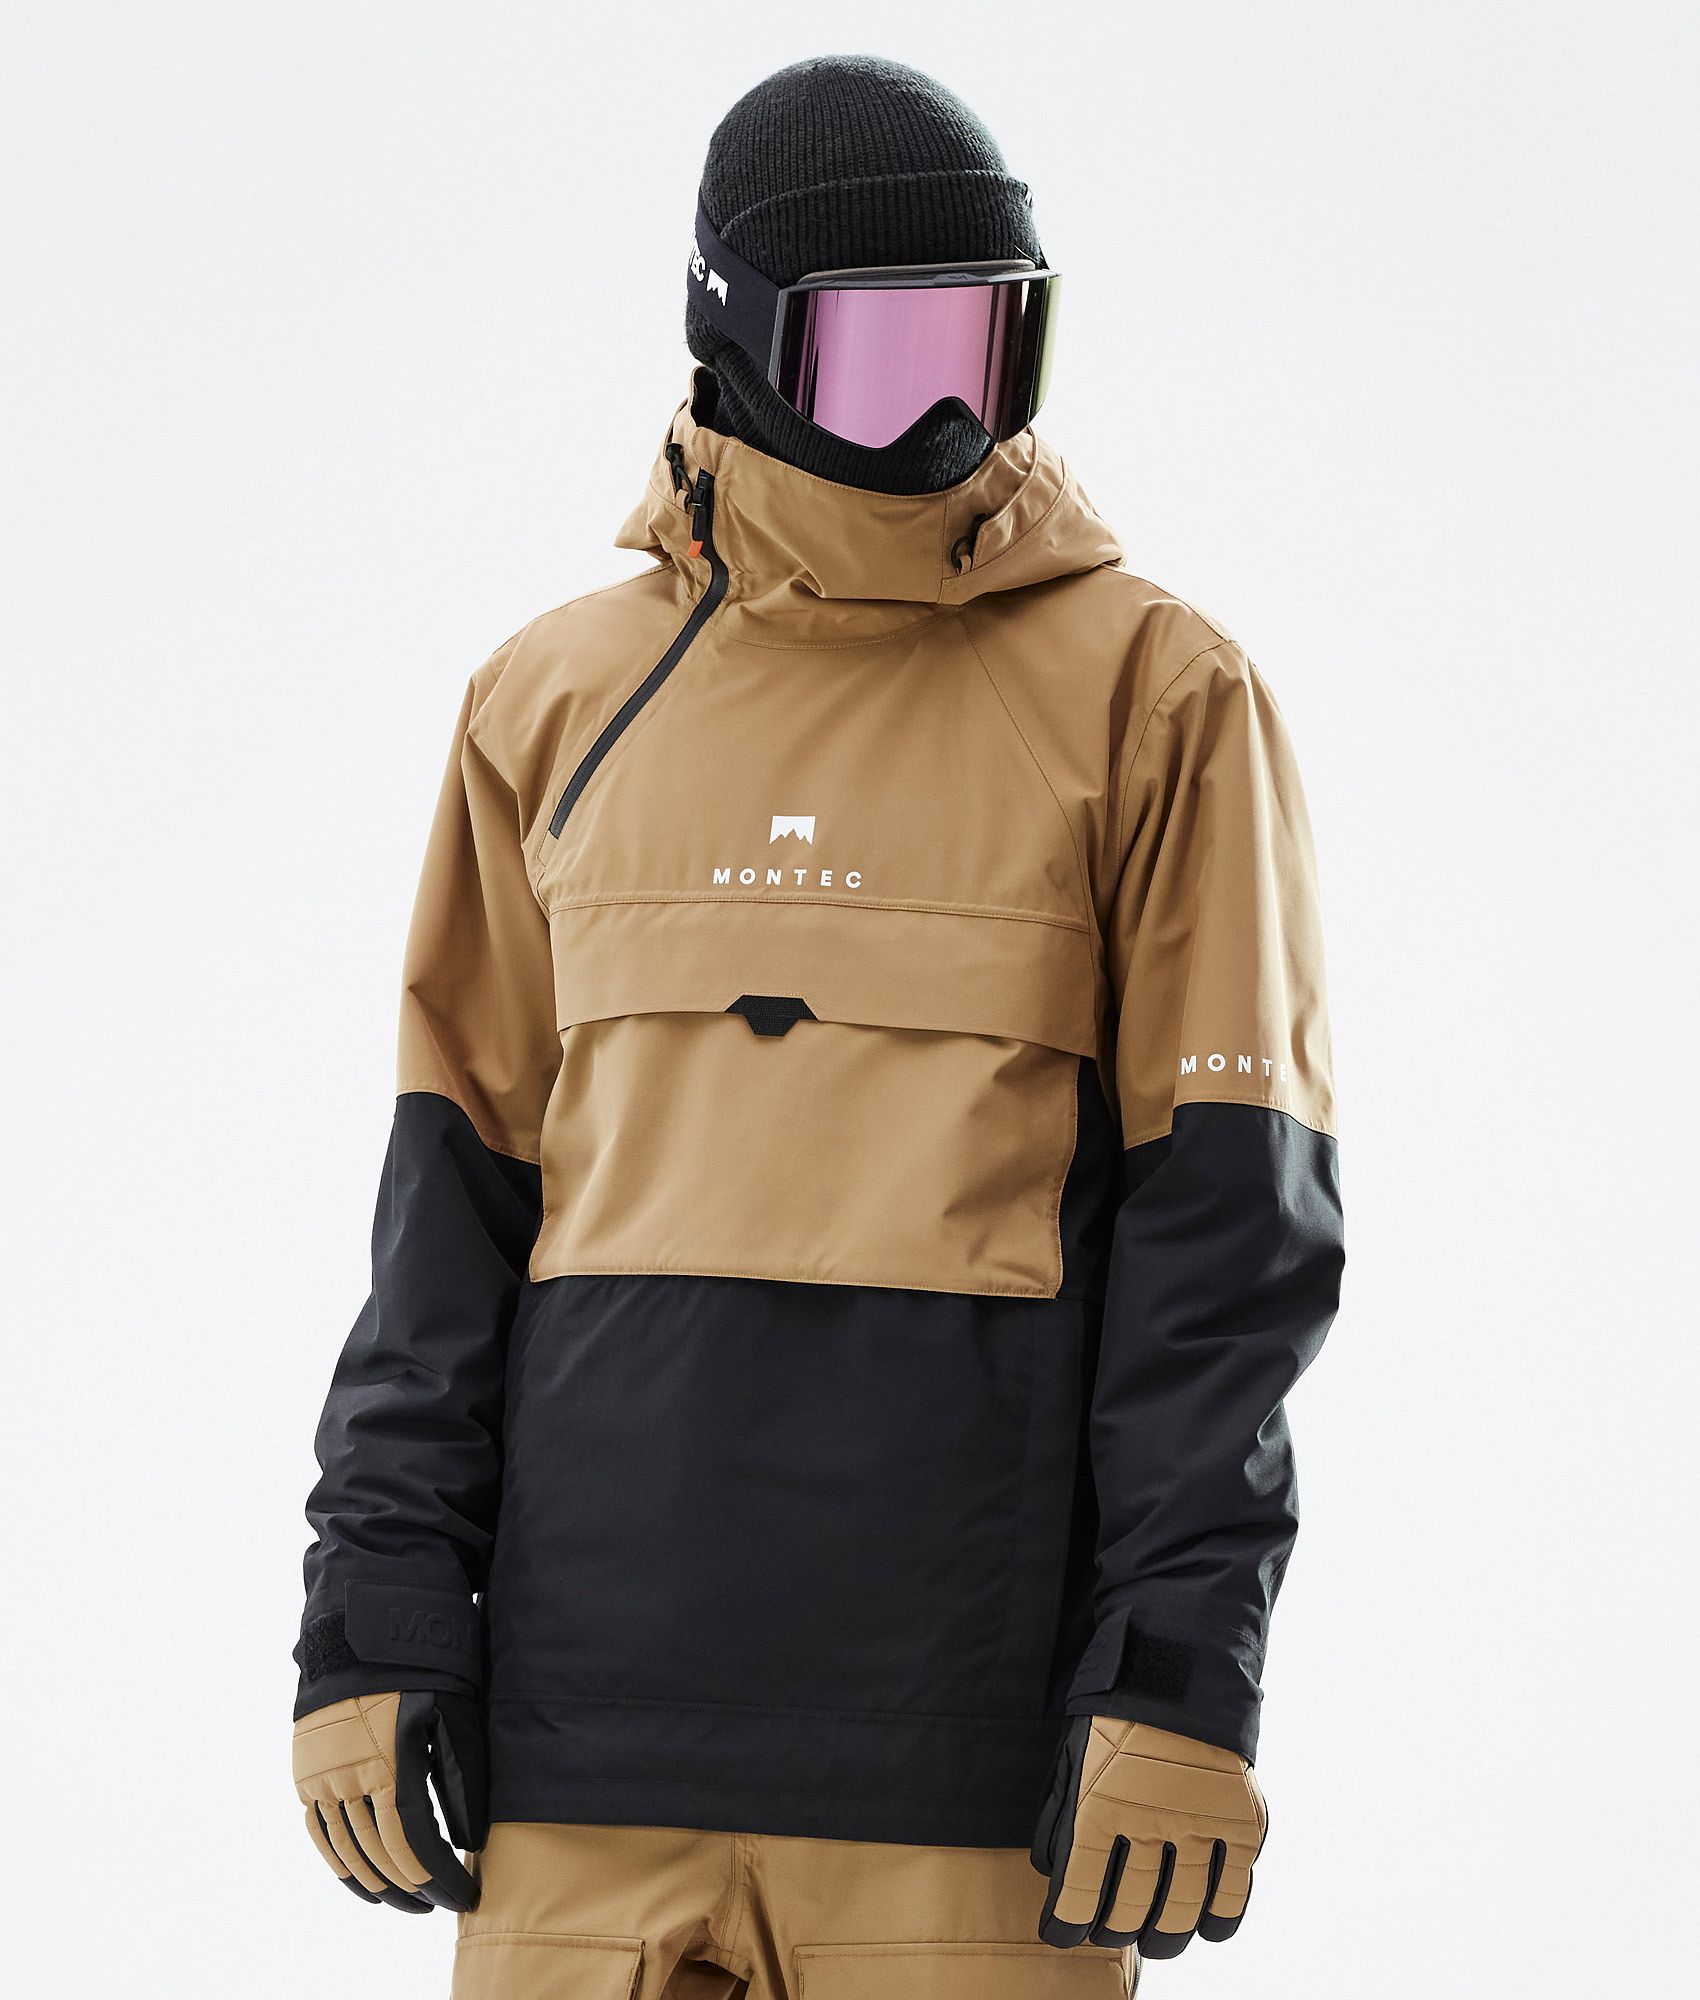 WMOFC Completo da Sci Ragazzi Ski Suit Giacca Snowboard Pantaloni Neve Vestito Antivento Impermeabile Cappotti di Inverno 